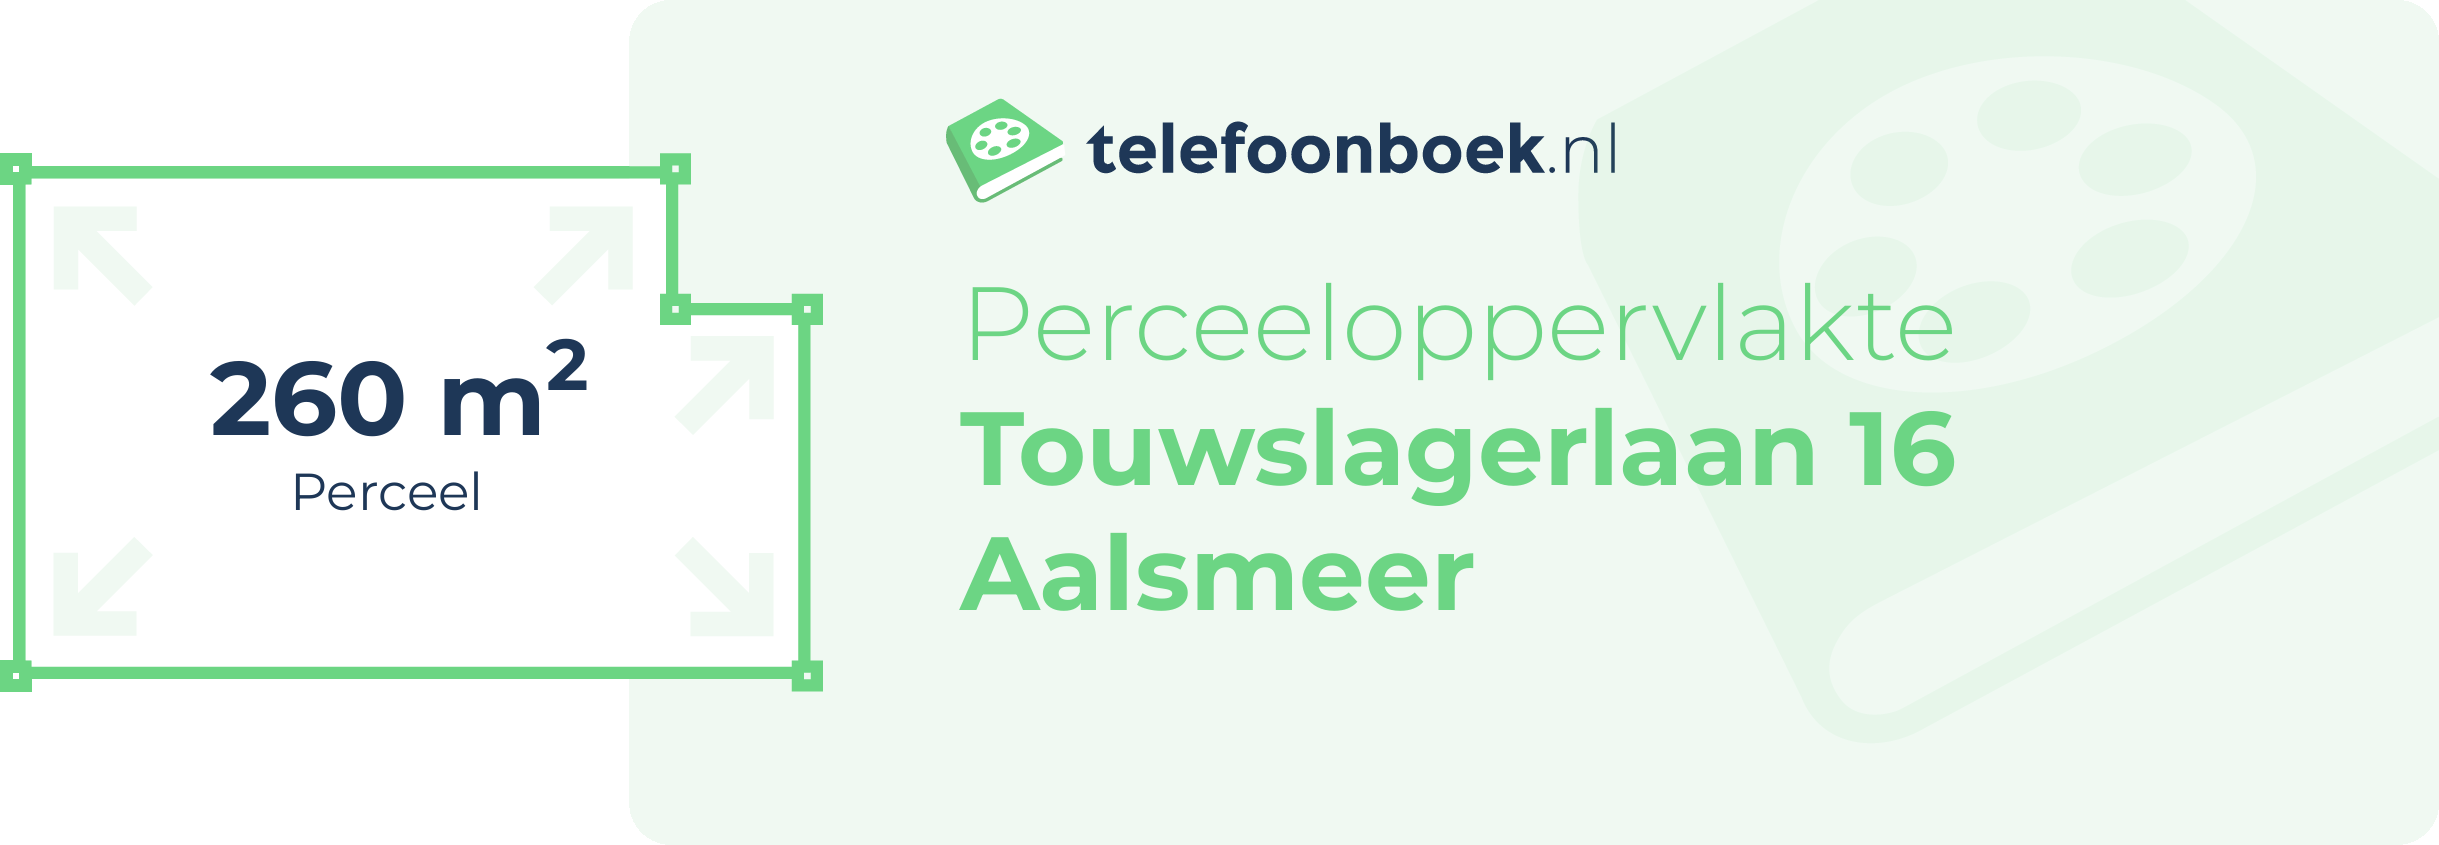 Perceeloppervlakte Touwslagerlaan 16 Aalsmeer